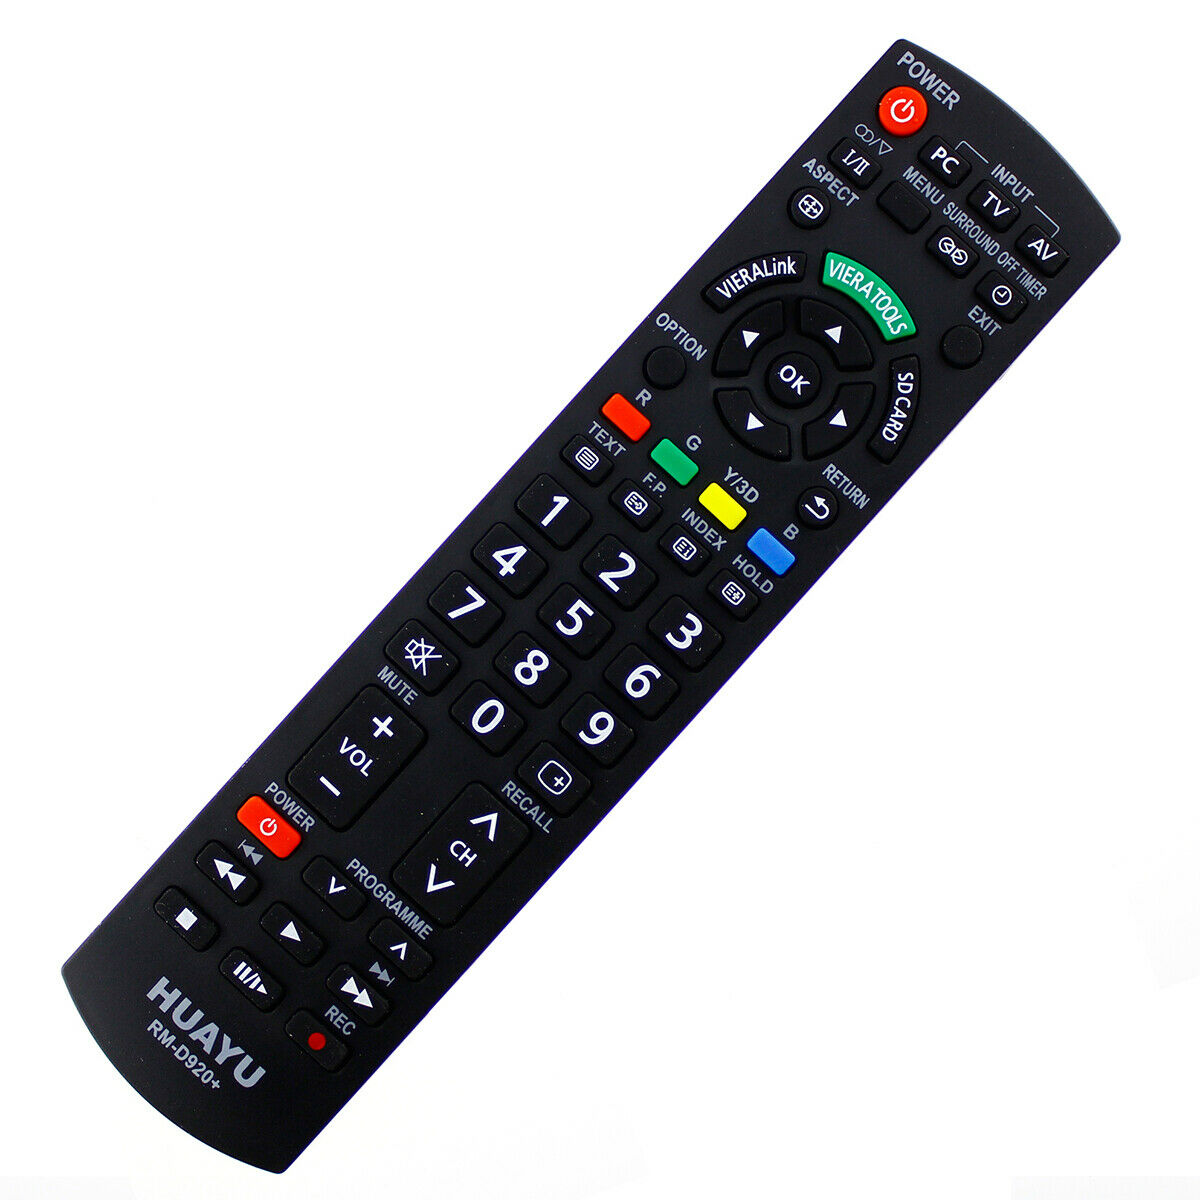 Ersatz Fernbedienung für Panasonic EUR7651120 TV Fernseher Remote Control Neu* 